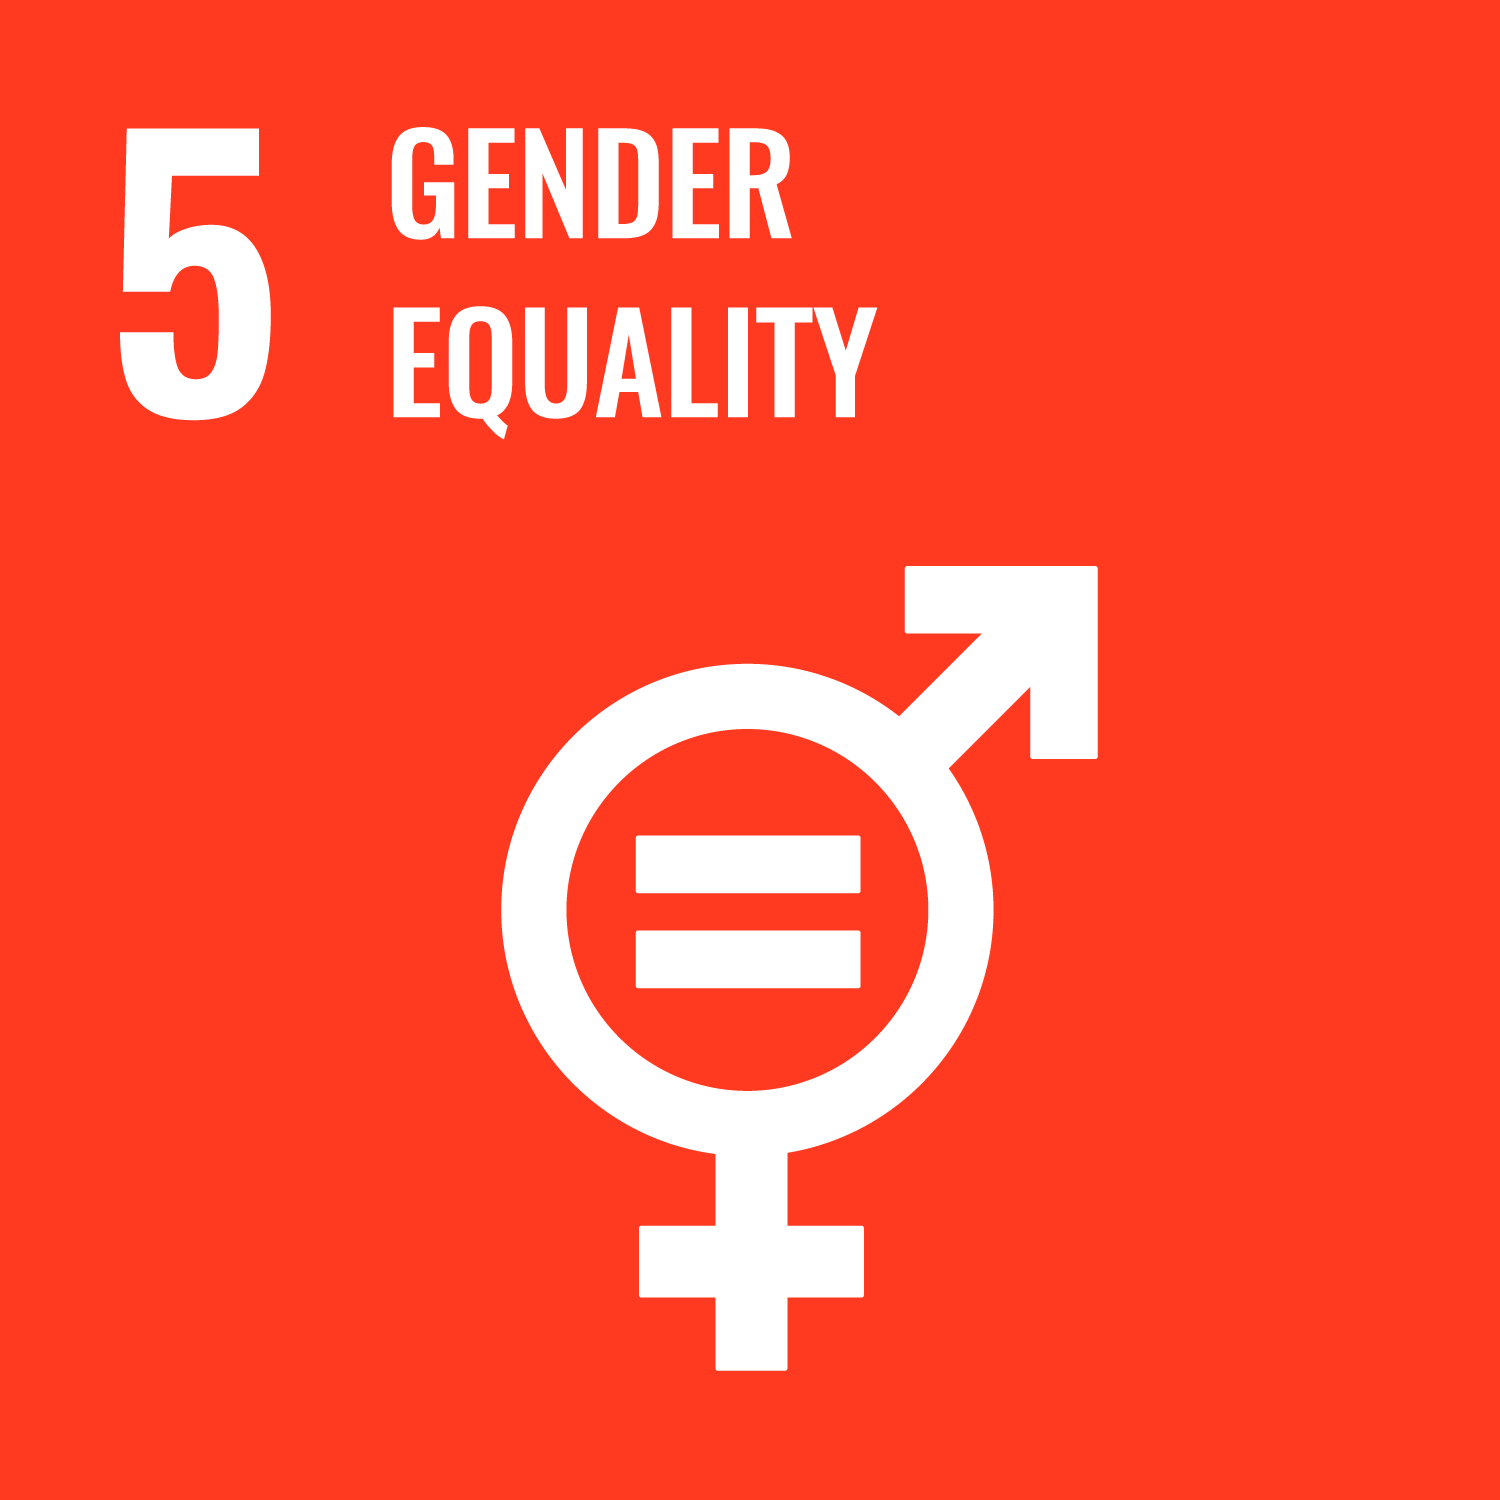 5 Gender Equality (UN Goal)